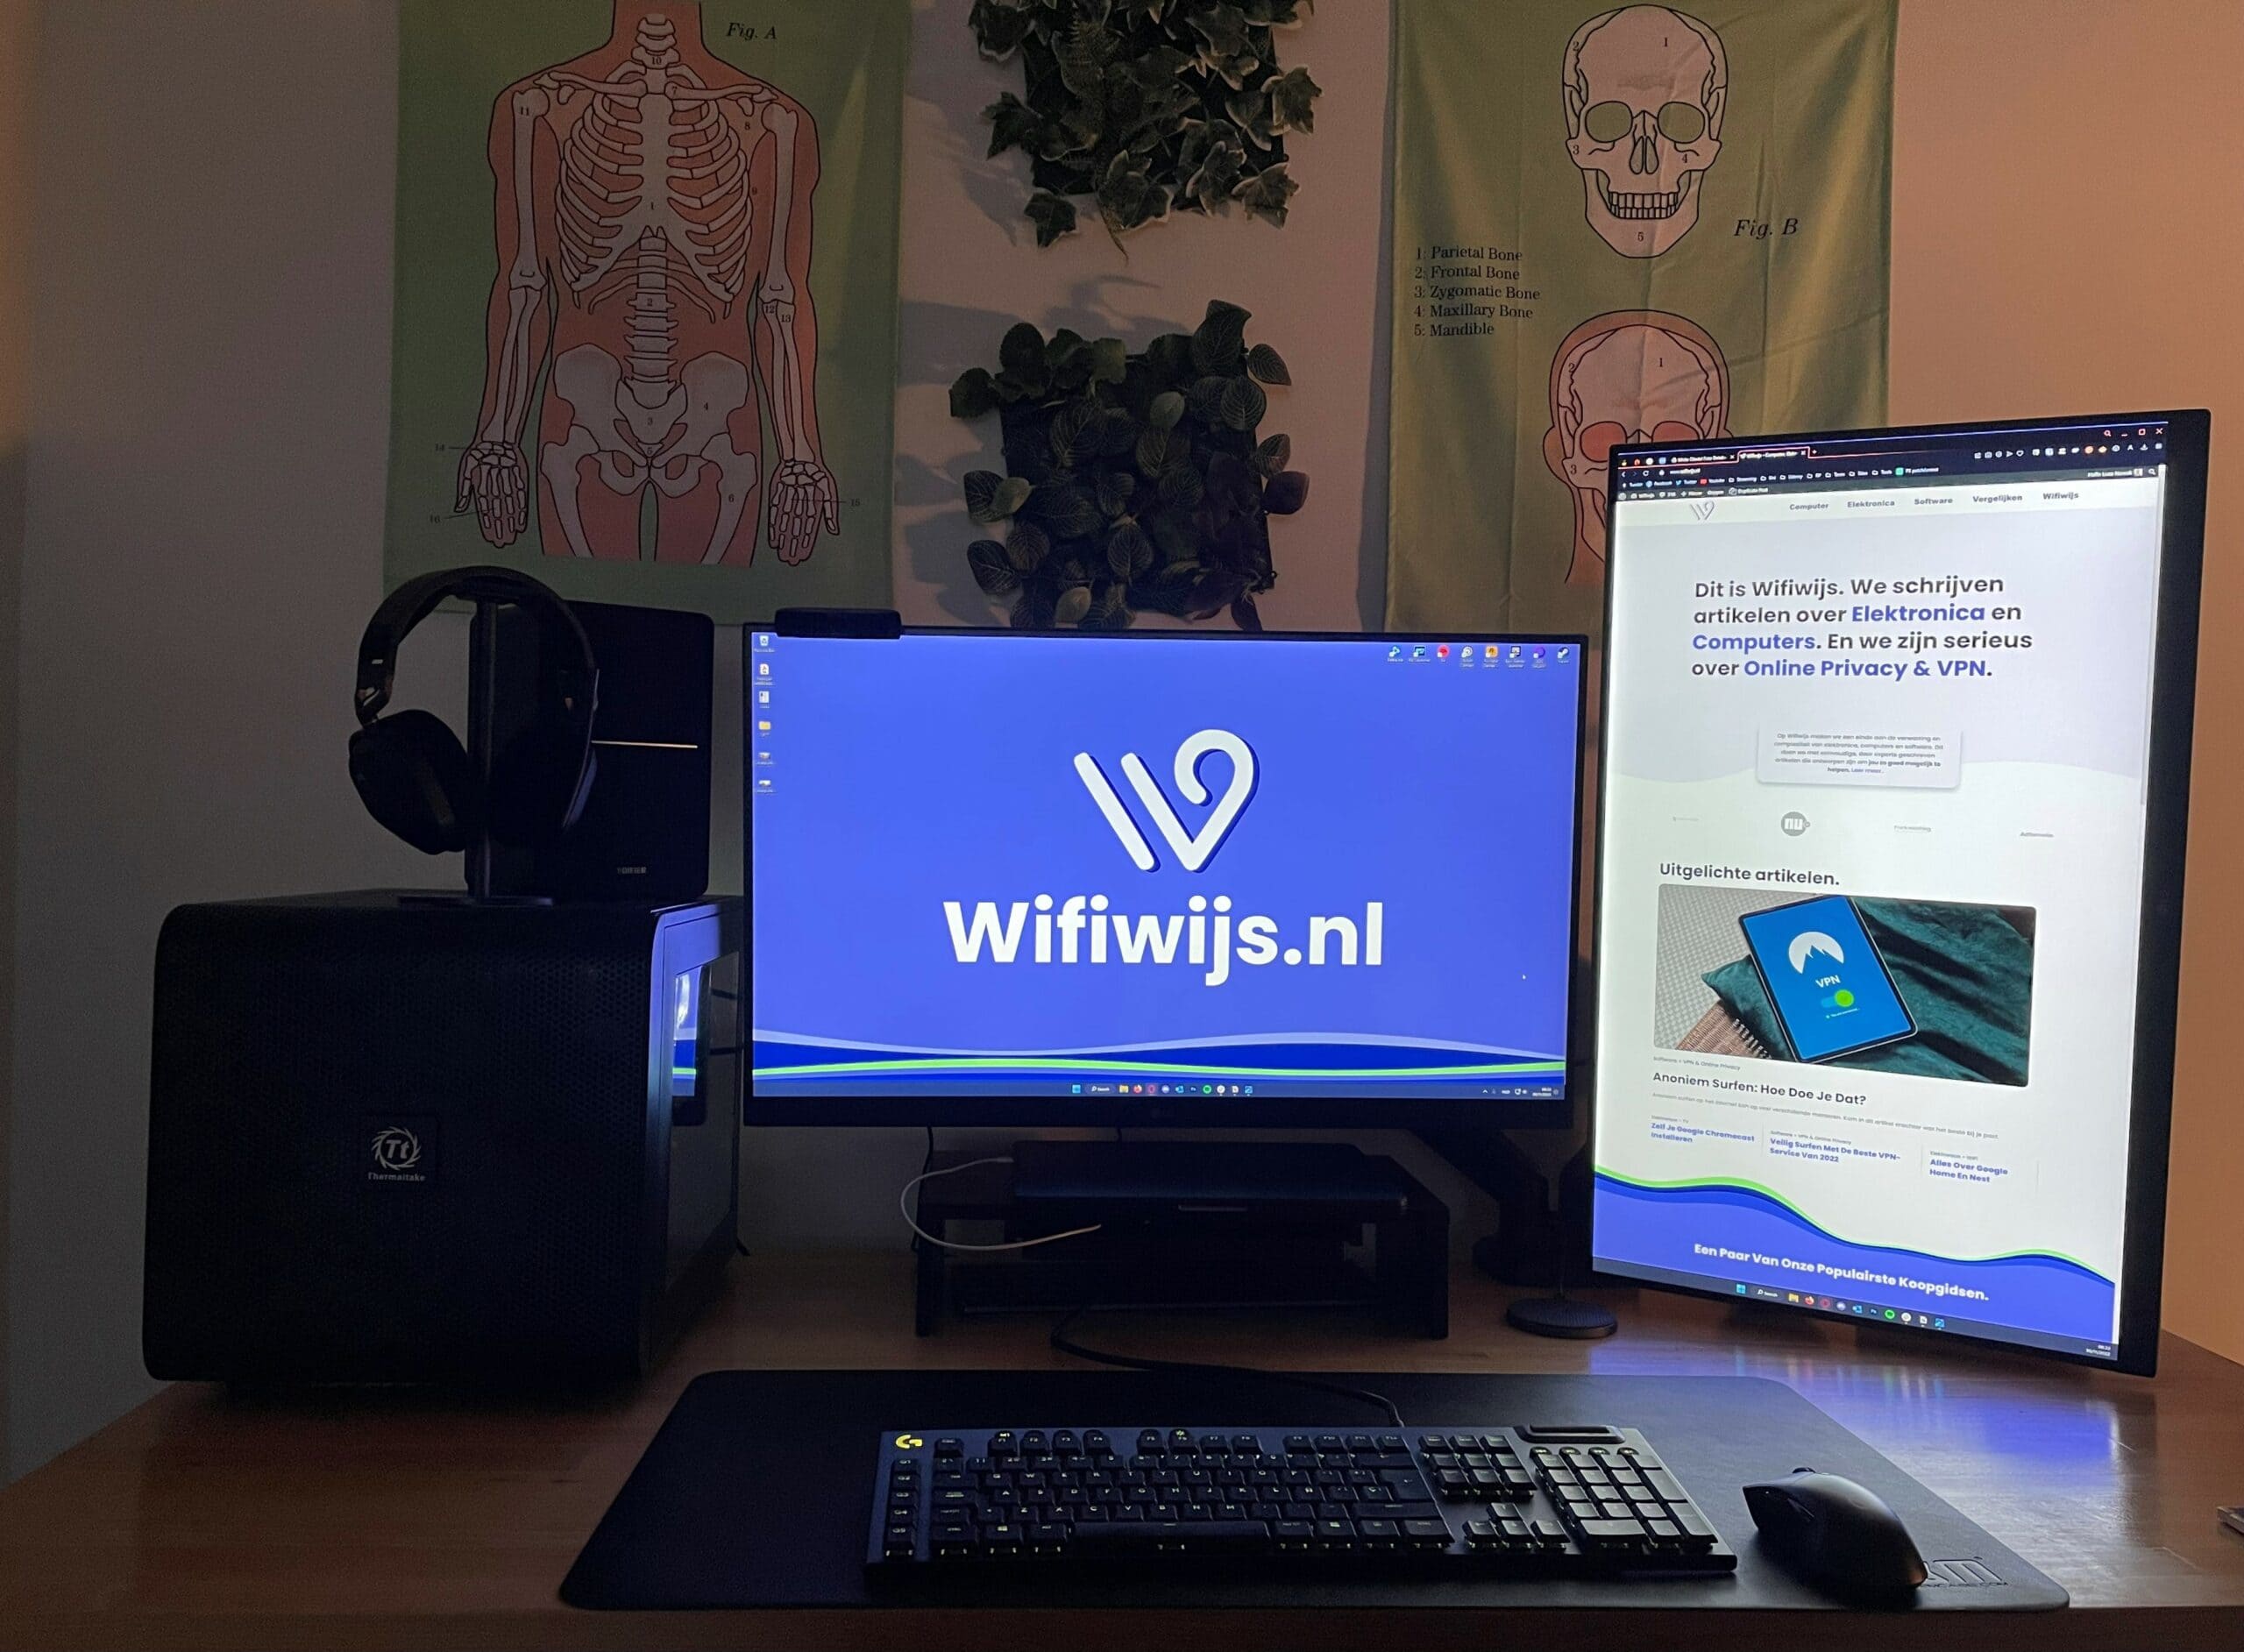 houten bureau met dual monitor set up met wifiwijs logo en site open met randapparatuur eromheen